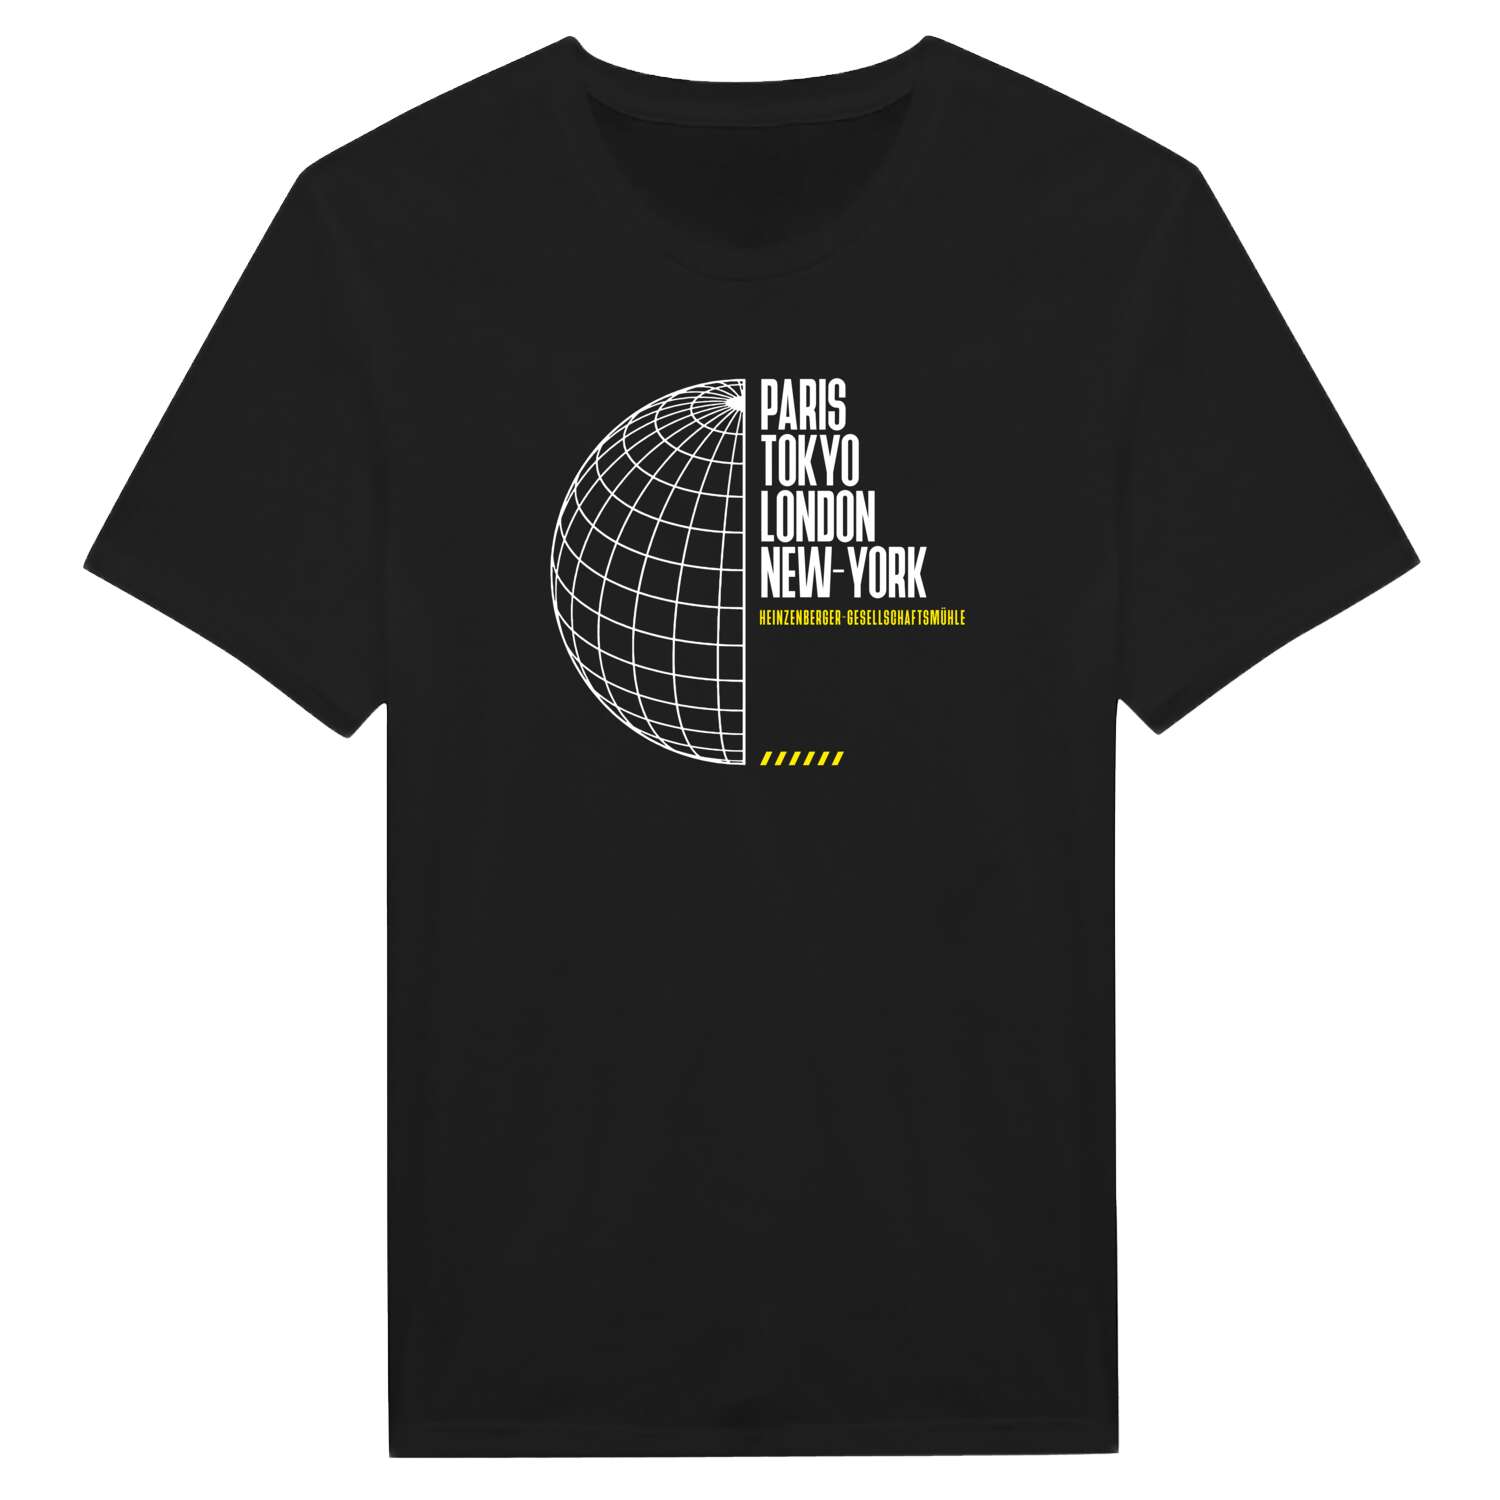 Heinzenberger-Gesellschaftsmühle T-Shirt »Paris Tokyo London«